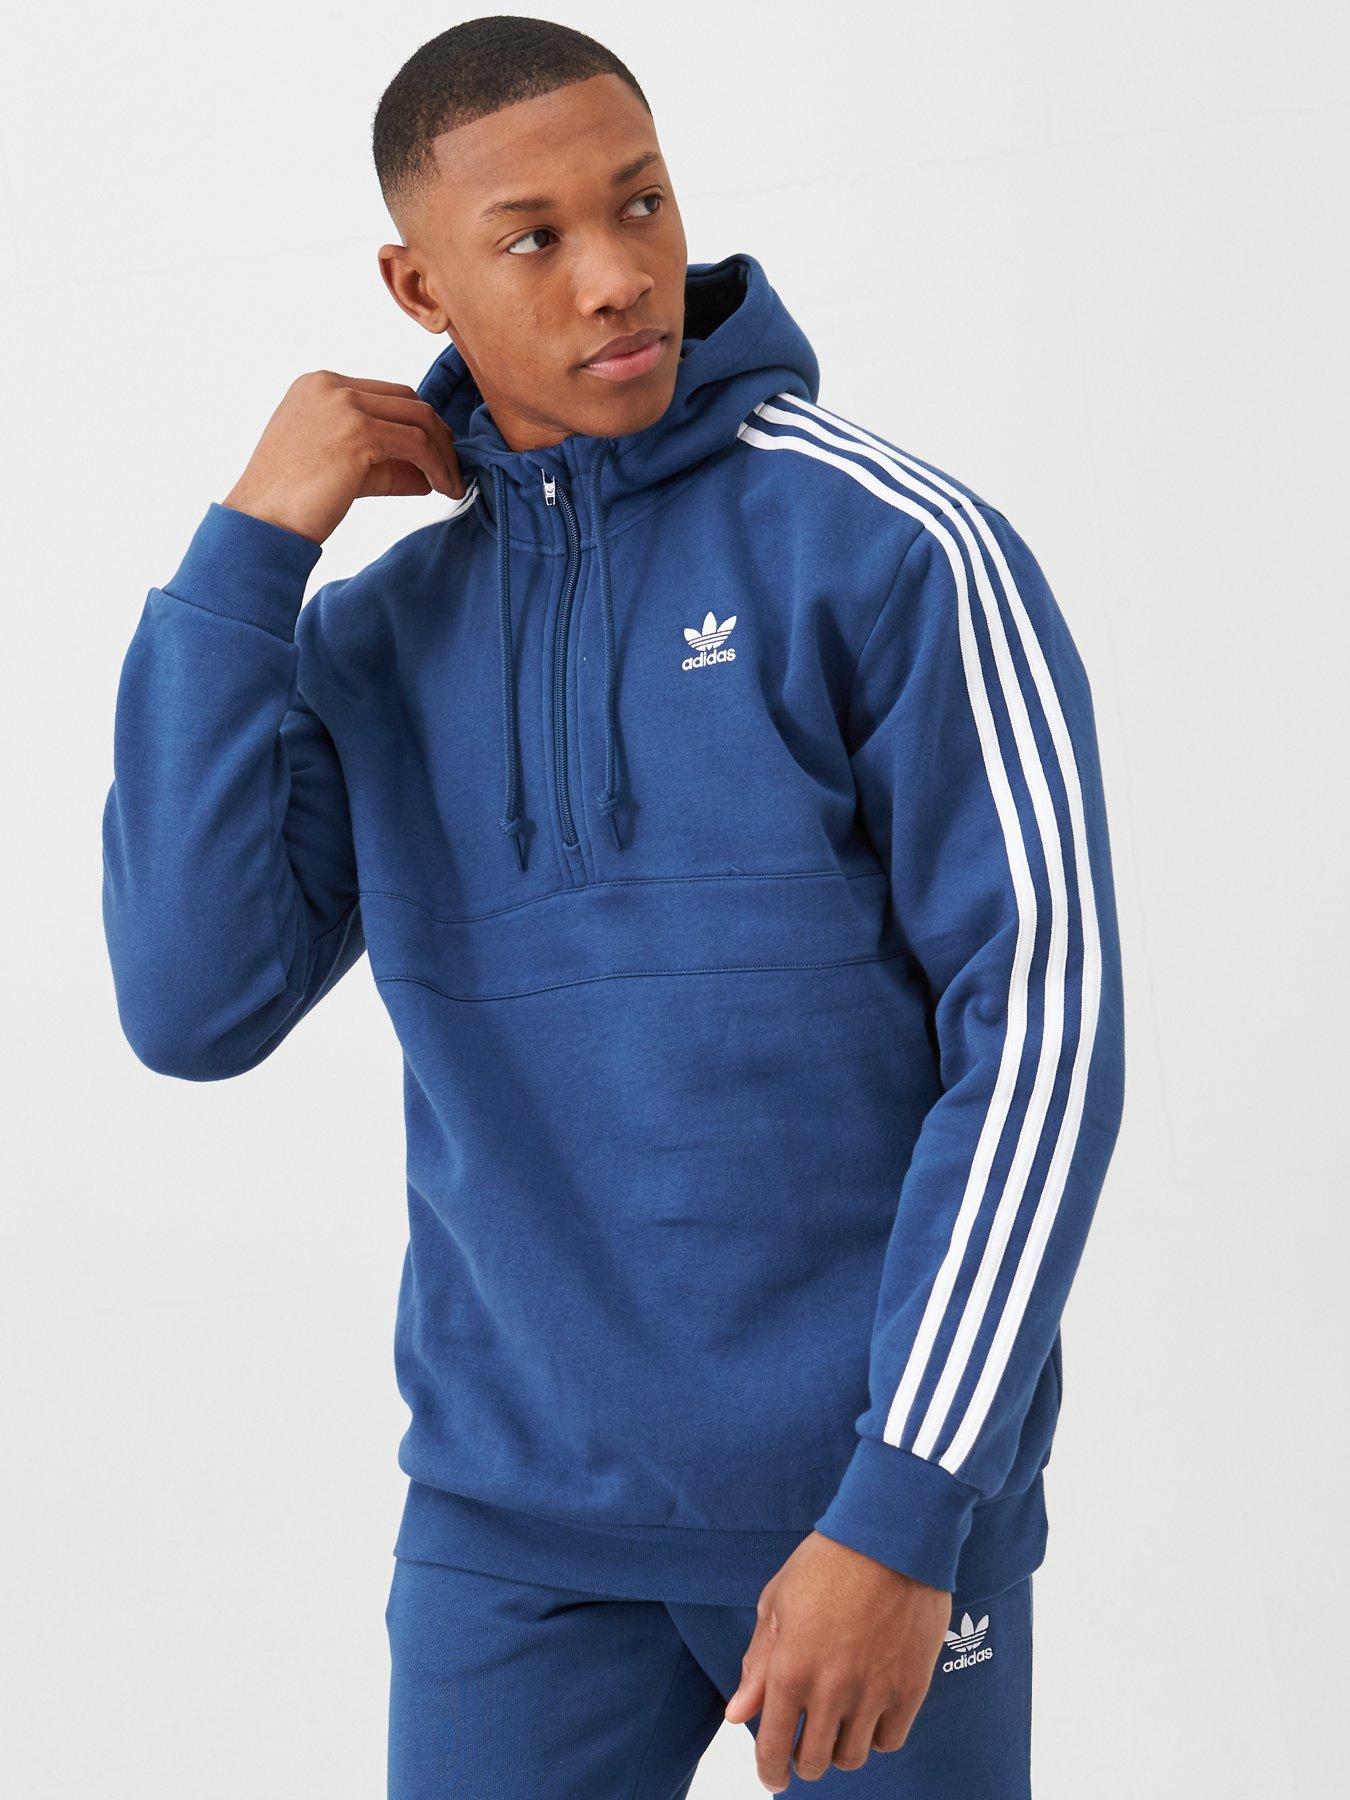 hoodie adidas blue